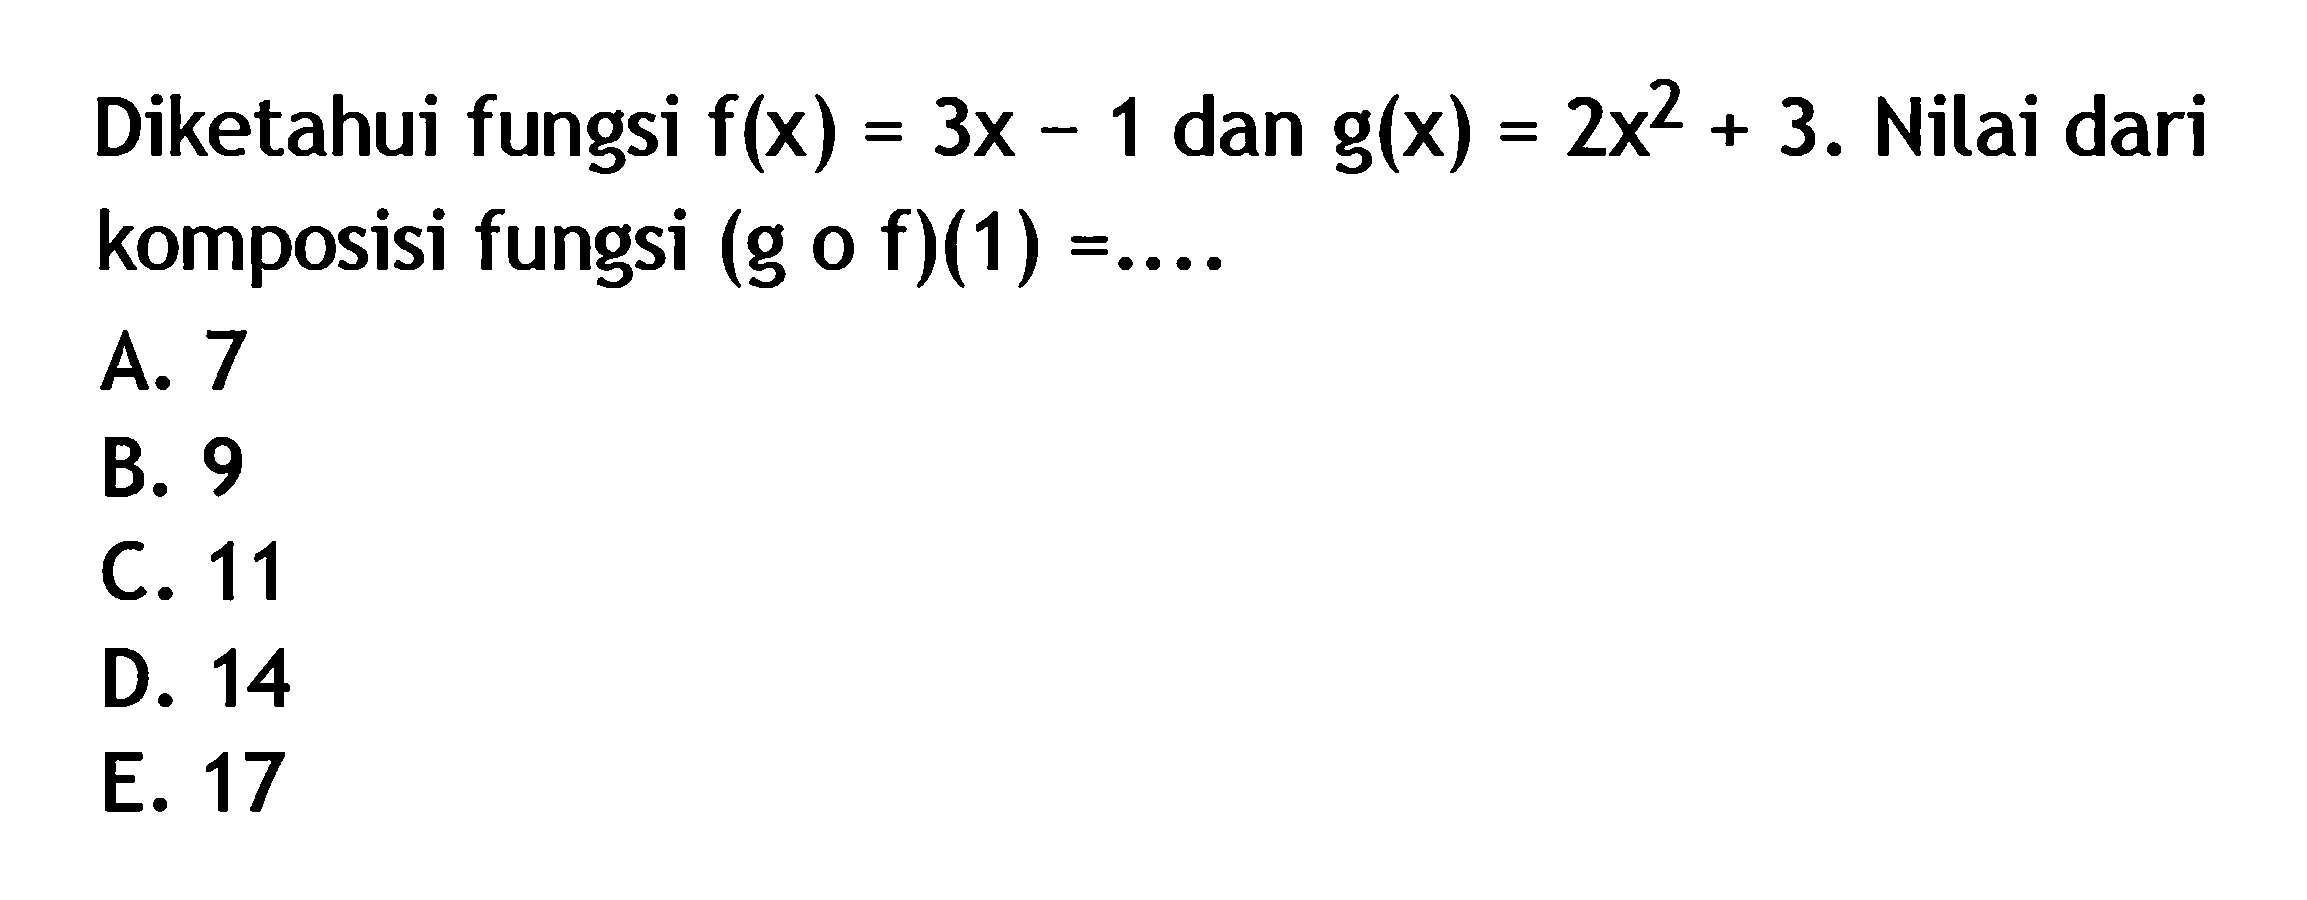 Diketahui fungsi  f(x)=3x-1  dan  g(x)=2x^2+3 . Nilai dari komposisi fungsi  (g o f )(1)=.... 